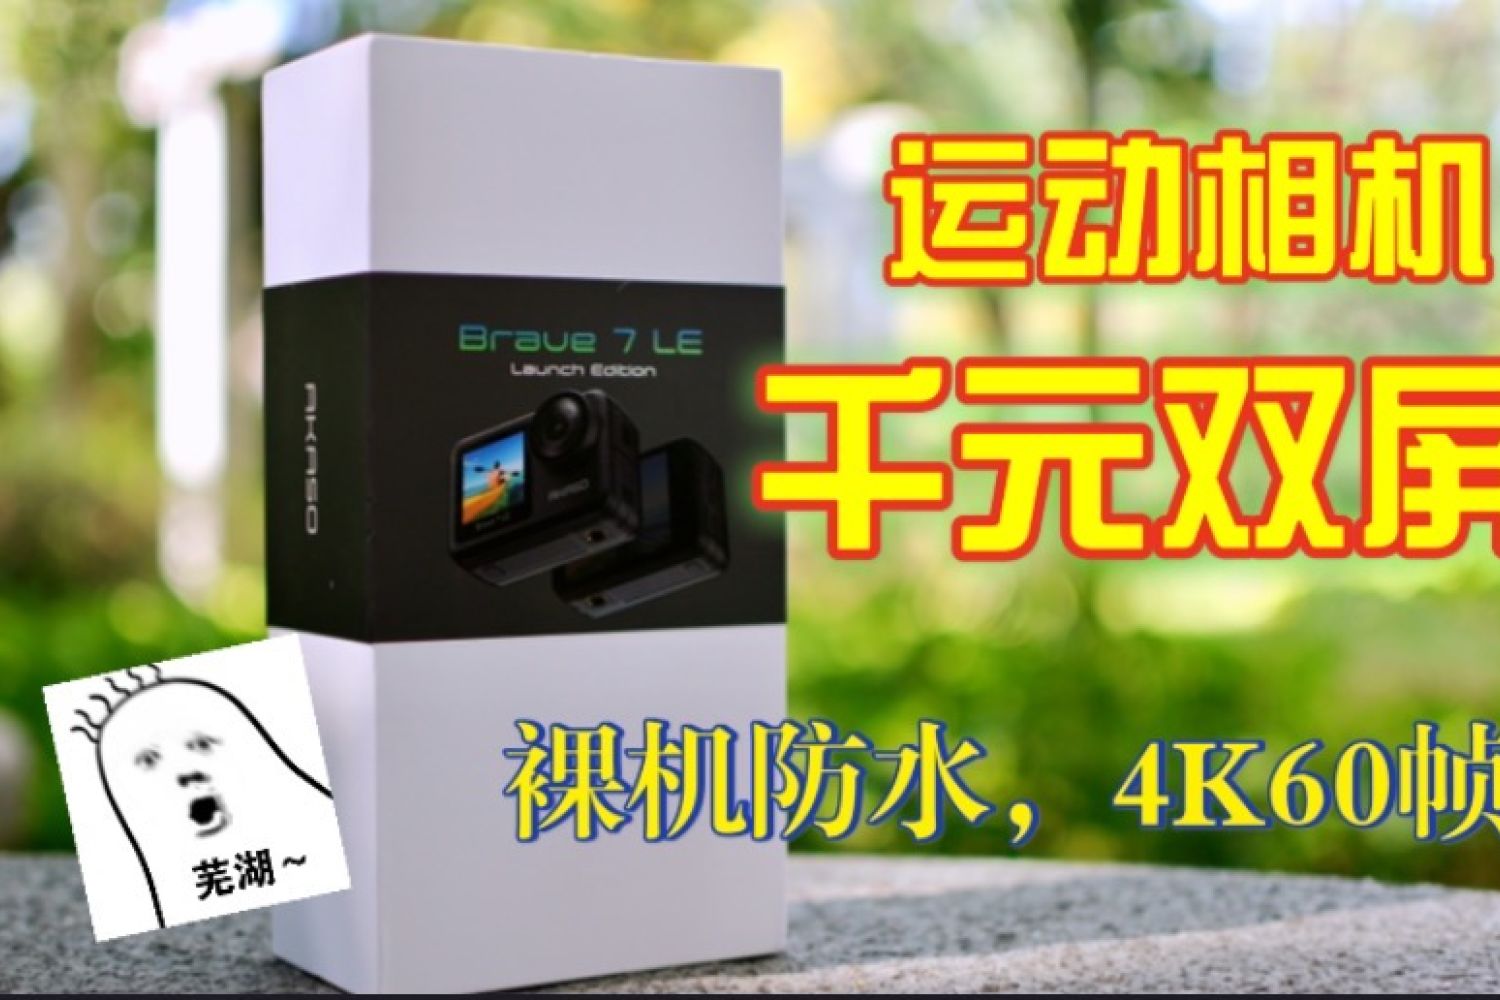 千元双屏专业运动相机AKASO Brave7LE上手体验